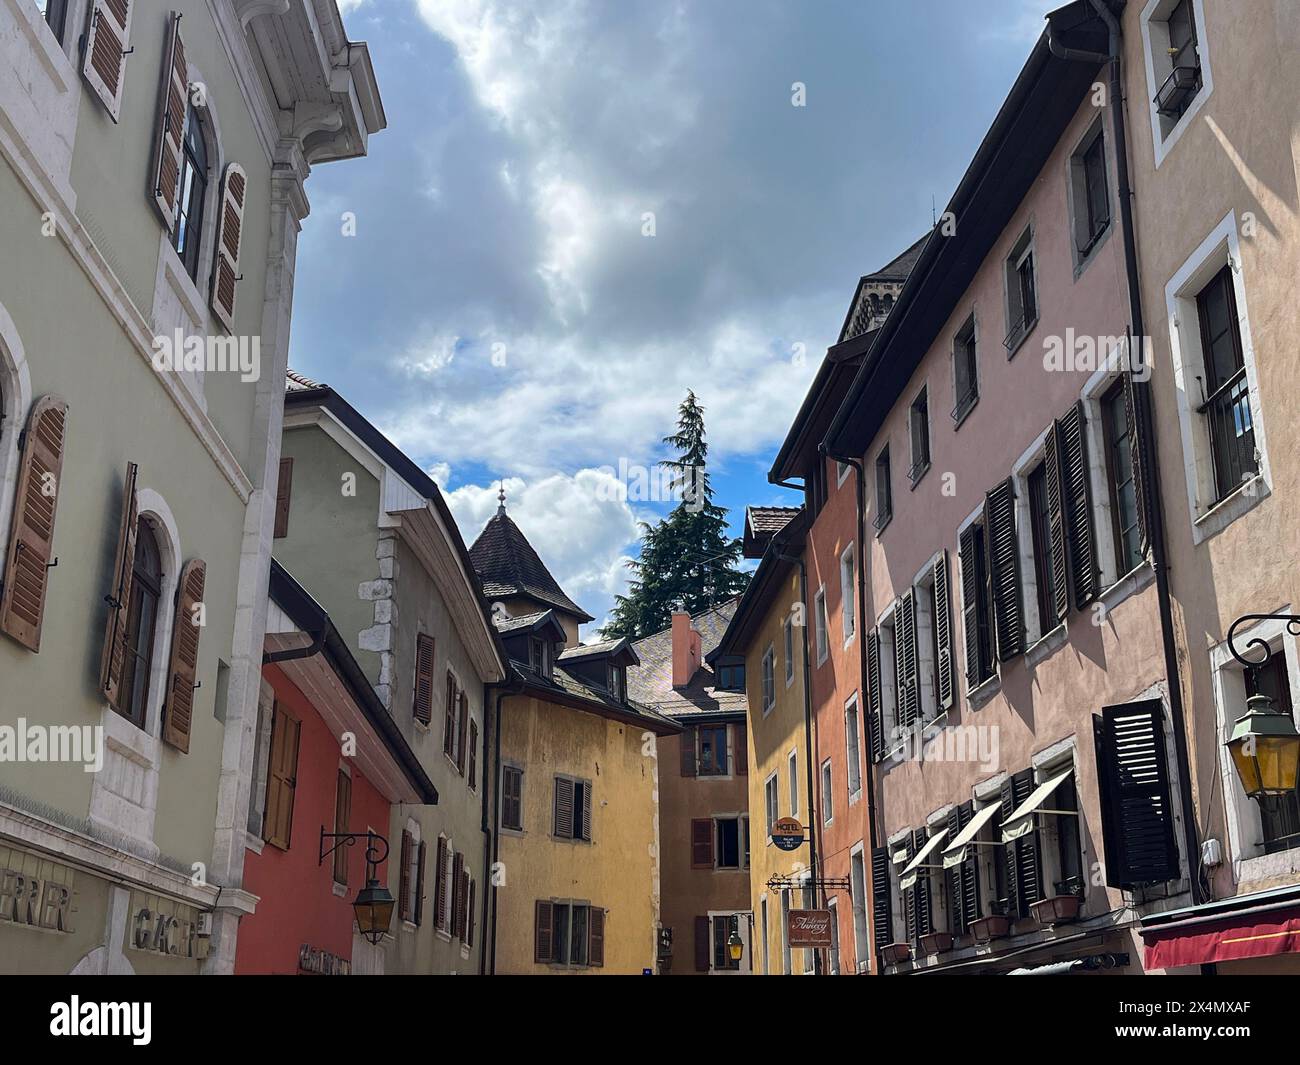 Annecy, alta Savoia, Francia: Skyline, palazzi medievali ed edifici nei vicoli della città vecchia di Annecy, la Venezia francese Foto Stock